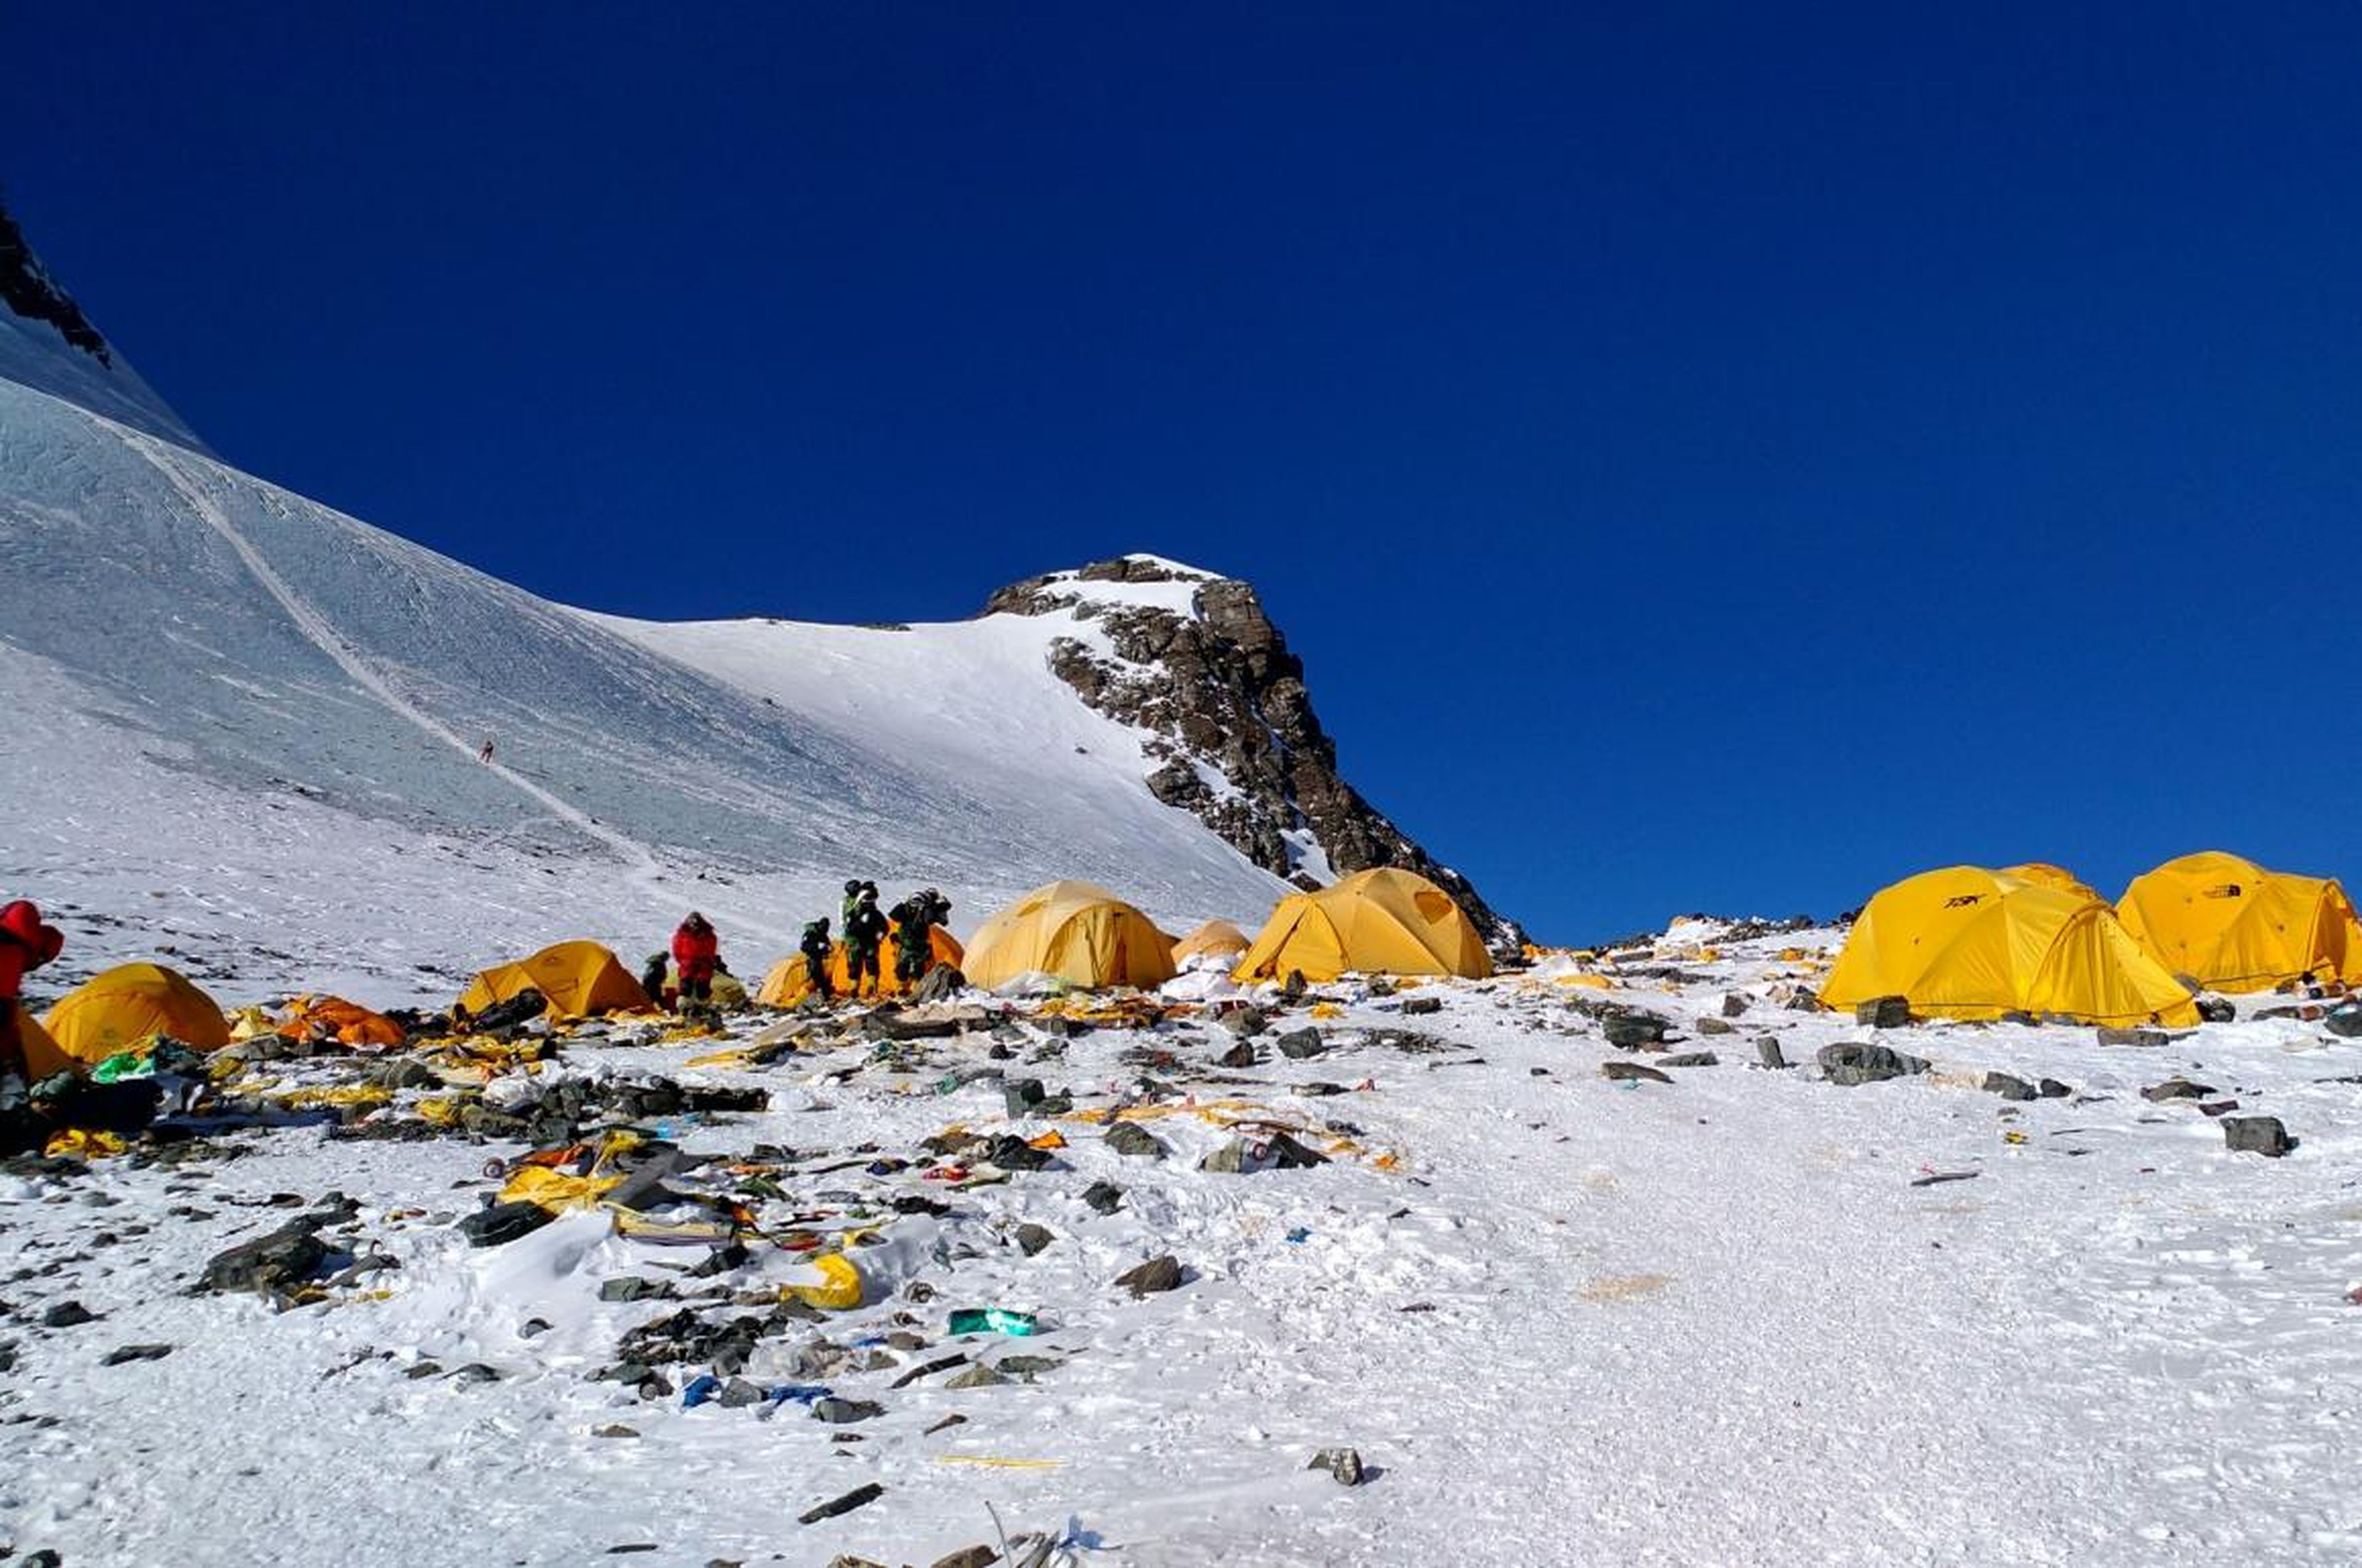 Esta fotografía tomada el 21 de mayo de 2018 muestra el equipo de escalada descartado y la basura acumulada cerca del campamento 4